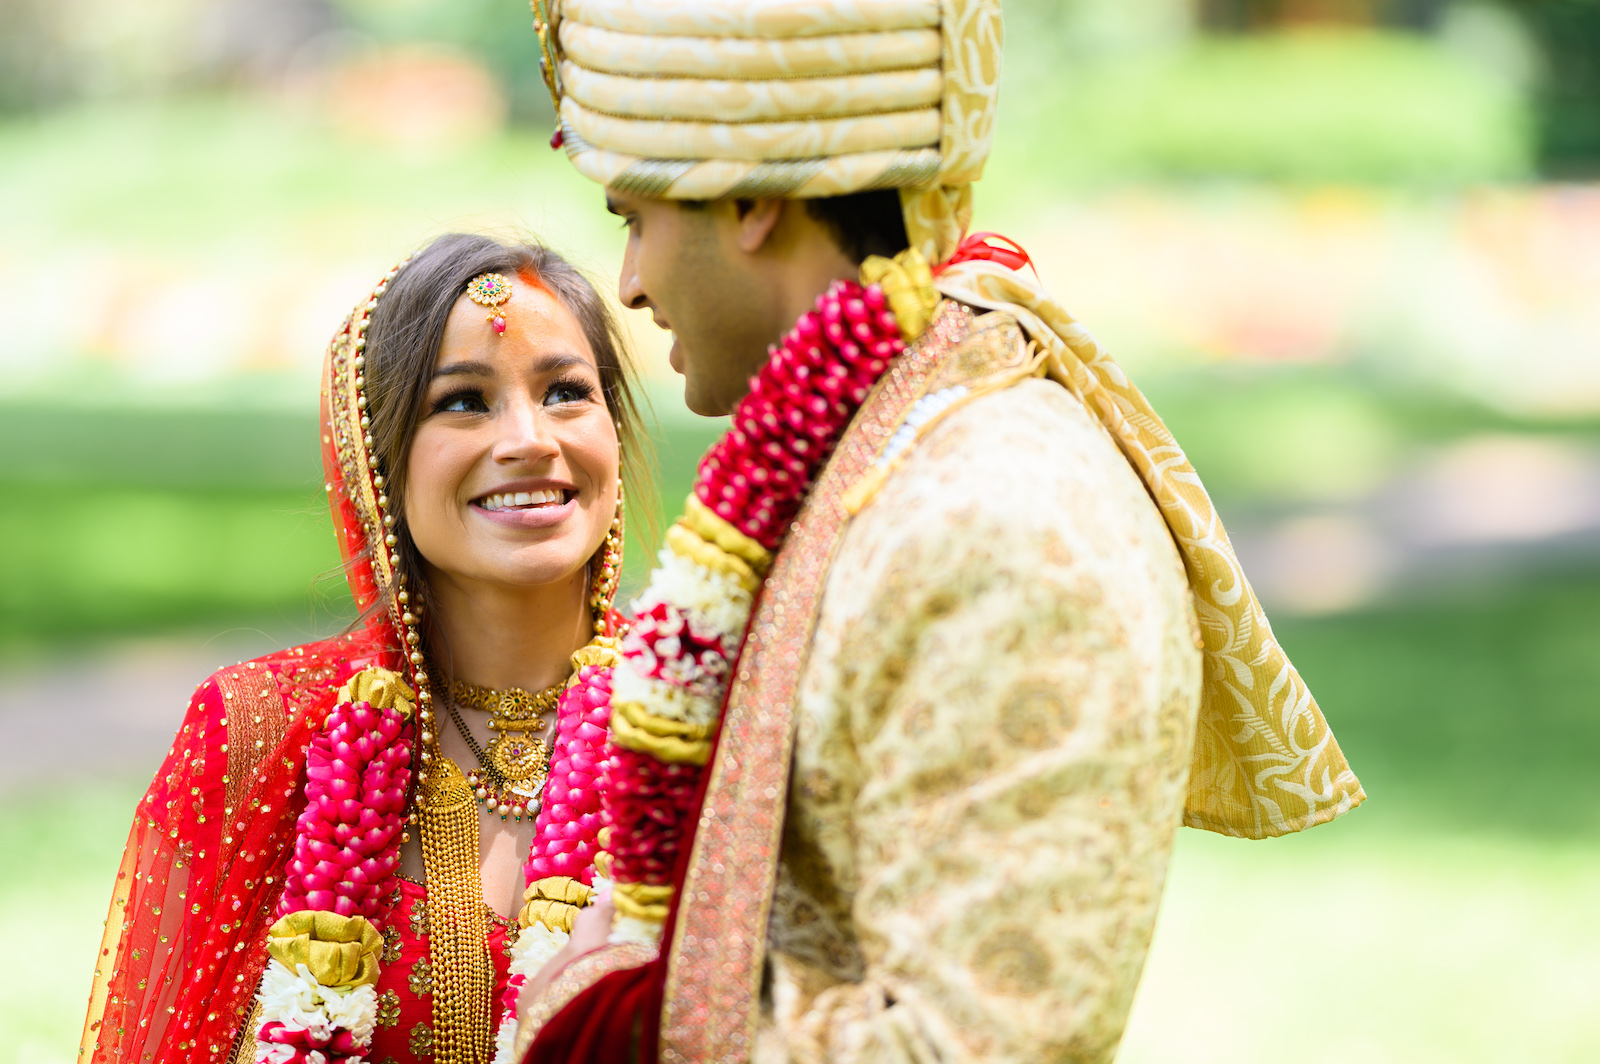 A Details Nashville Wedding: Katie + Sudeep’s Indian Wedding in Nashville